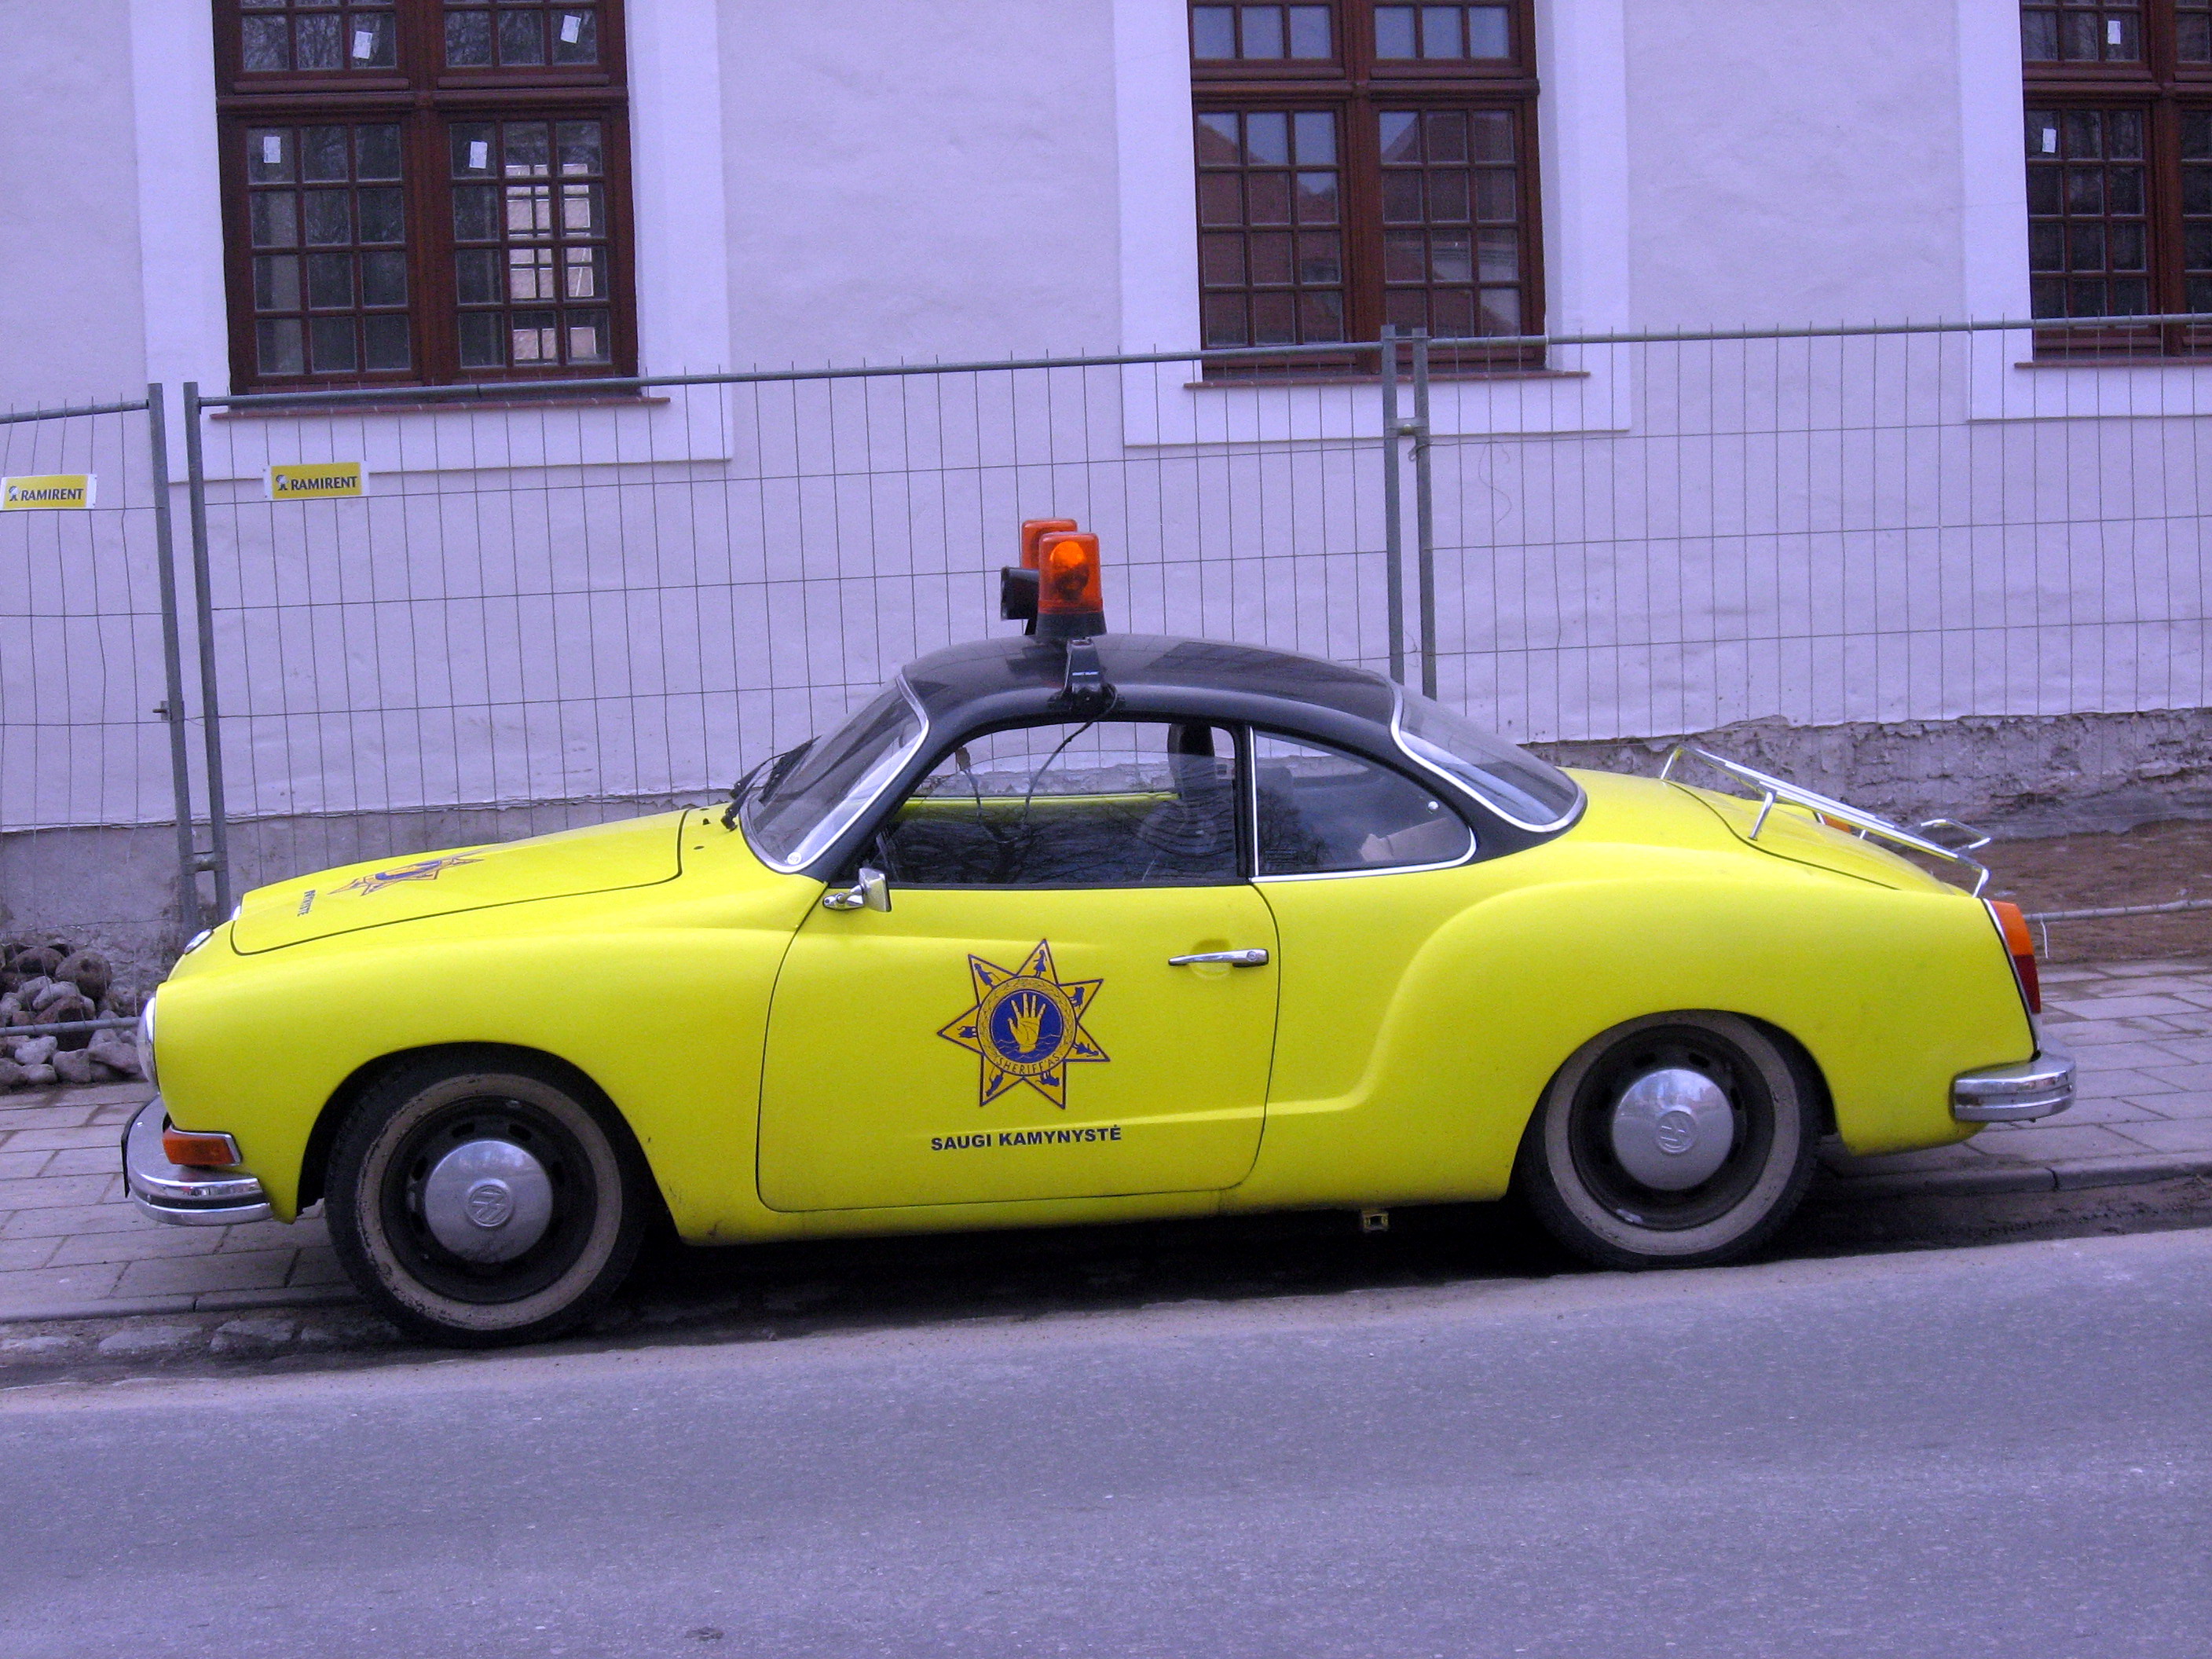 Žlutý automobil